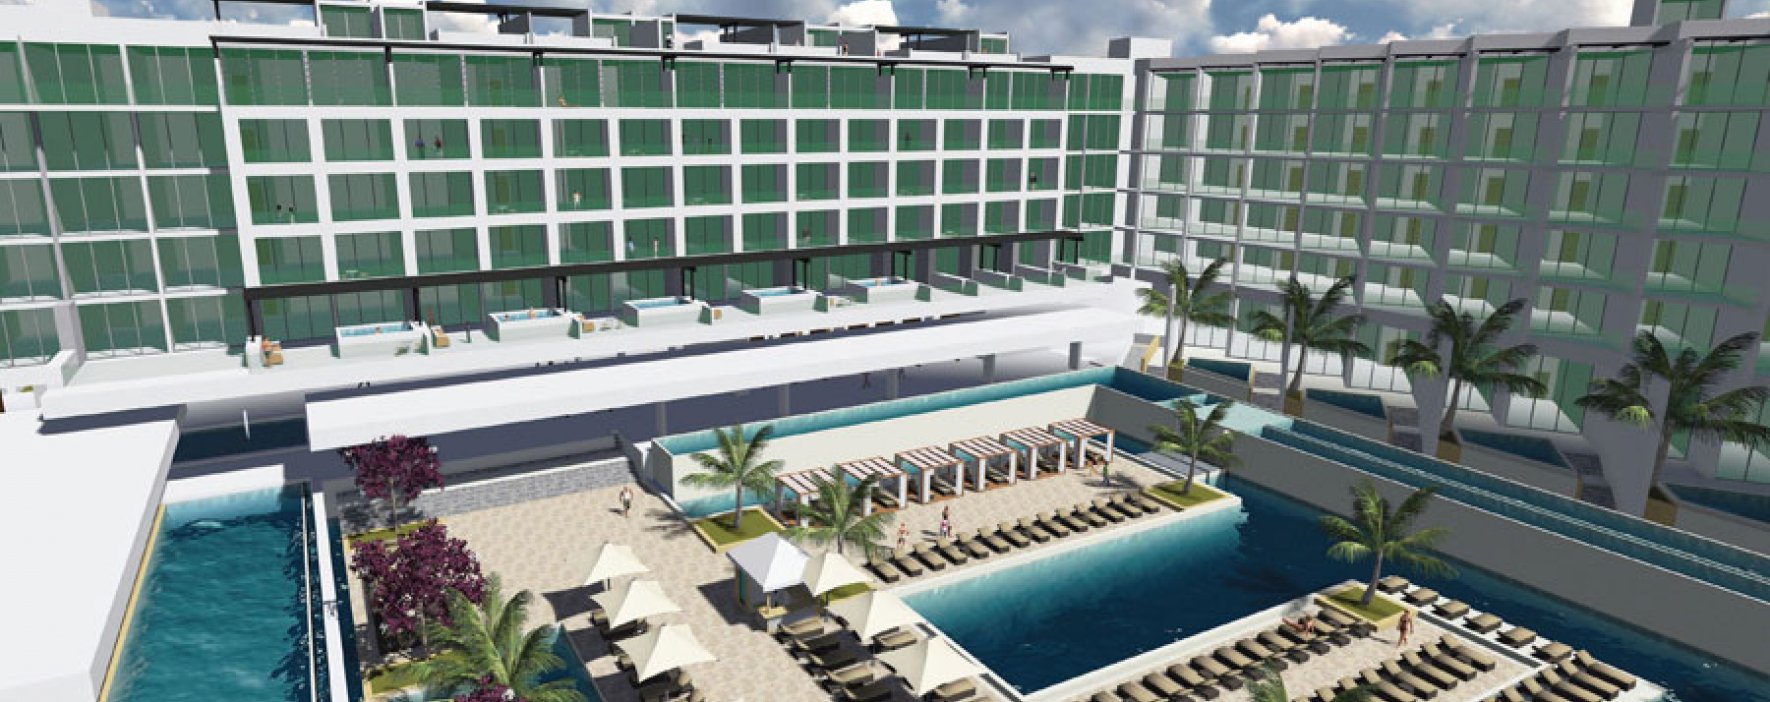 Tendencia sostenible en hotel de Cartagena 